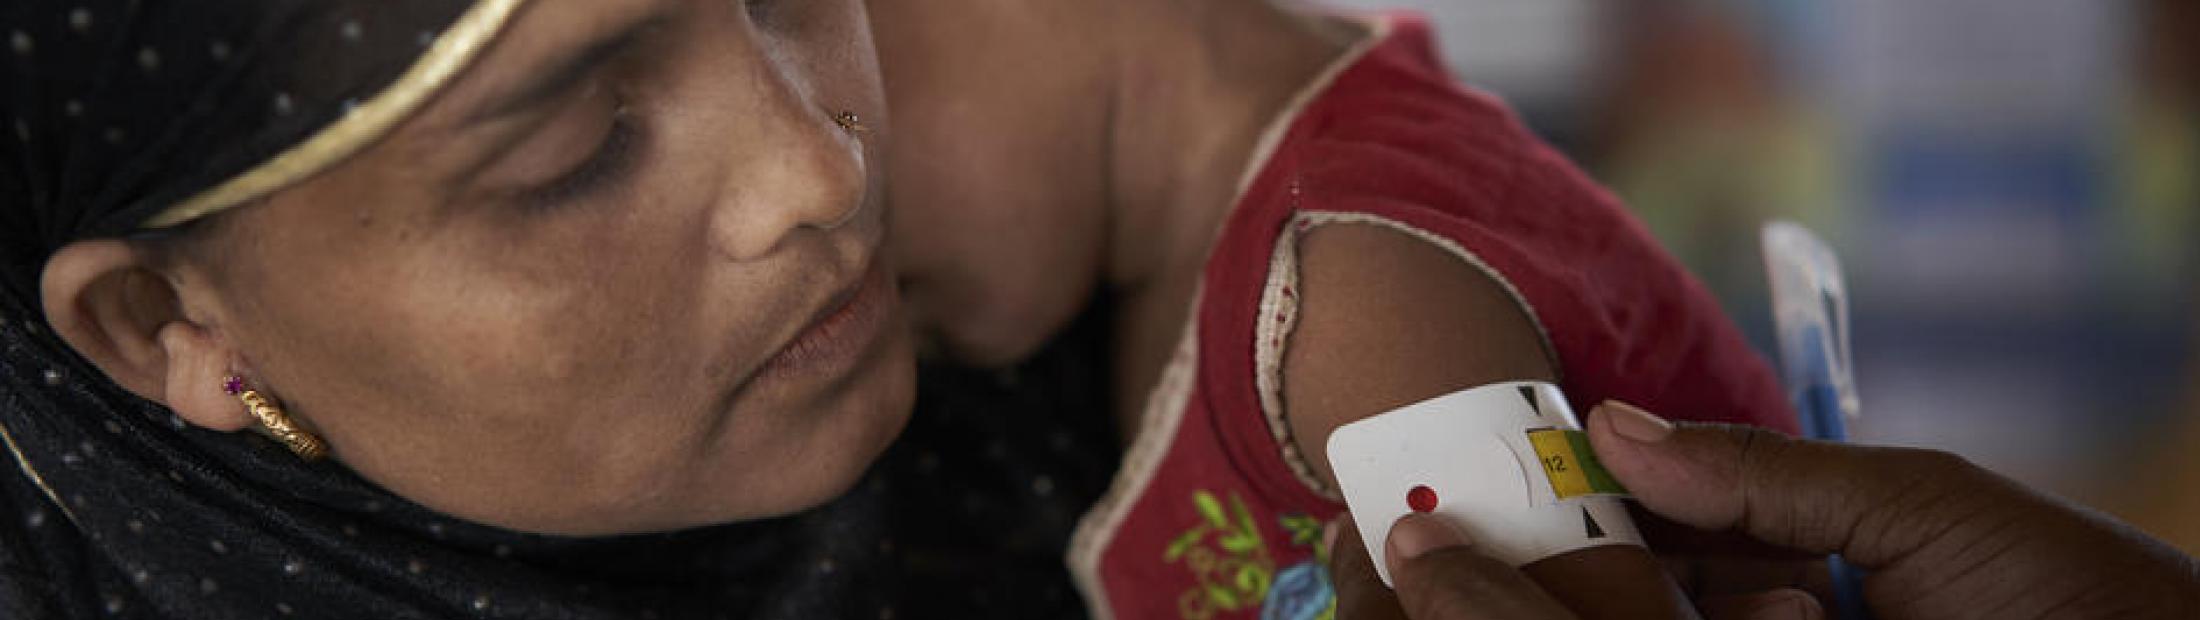 Malnutrición infantil en el mundo: causas y soluciones